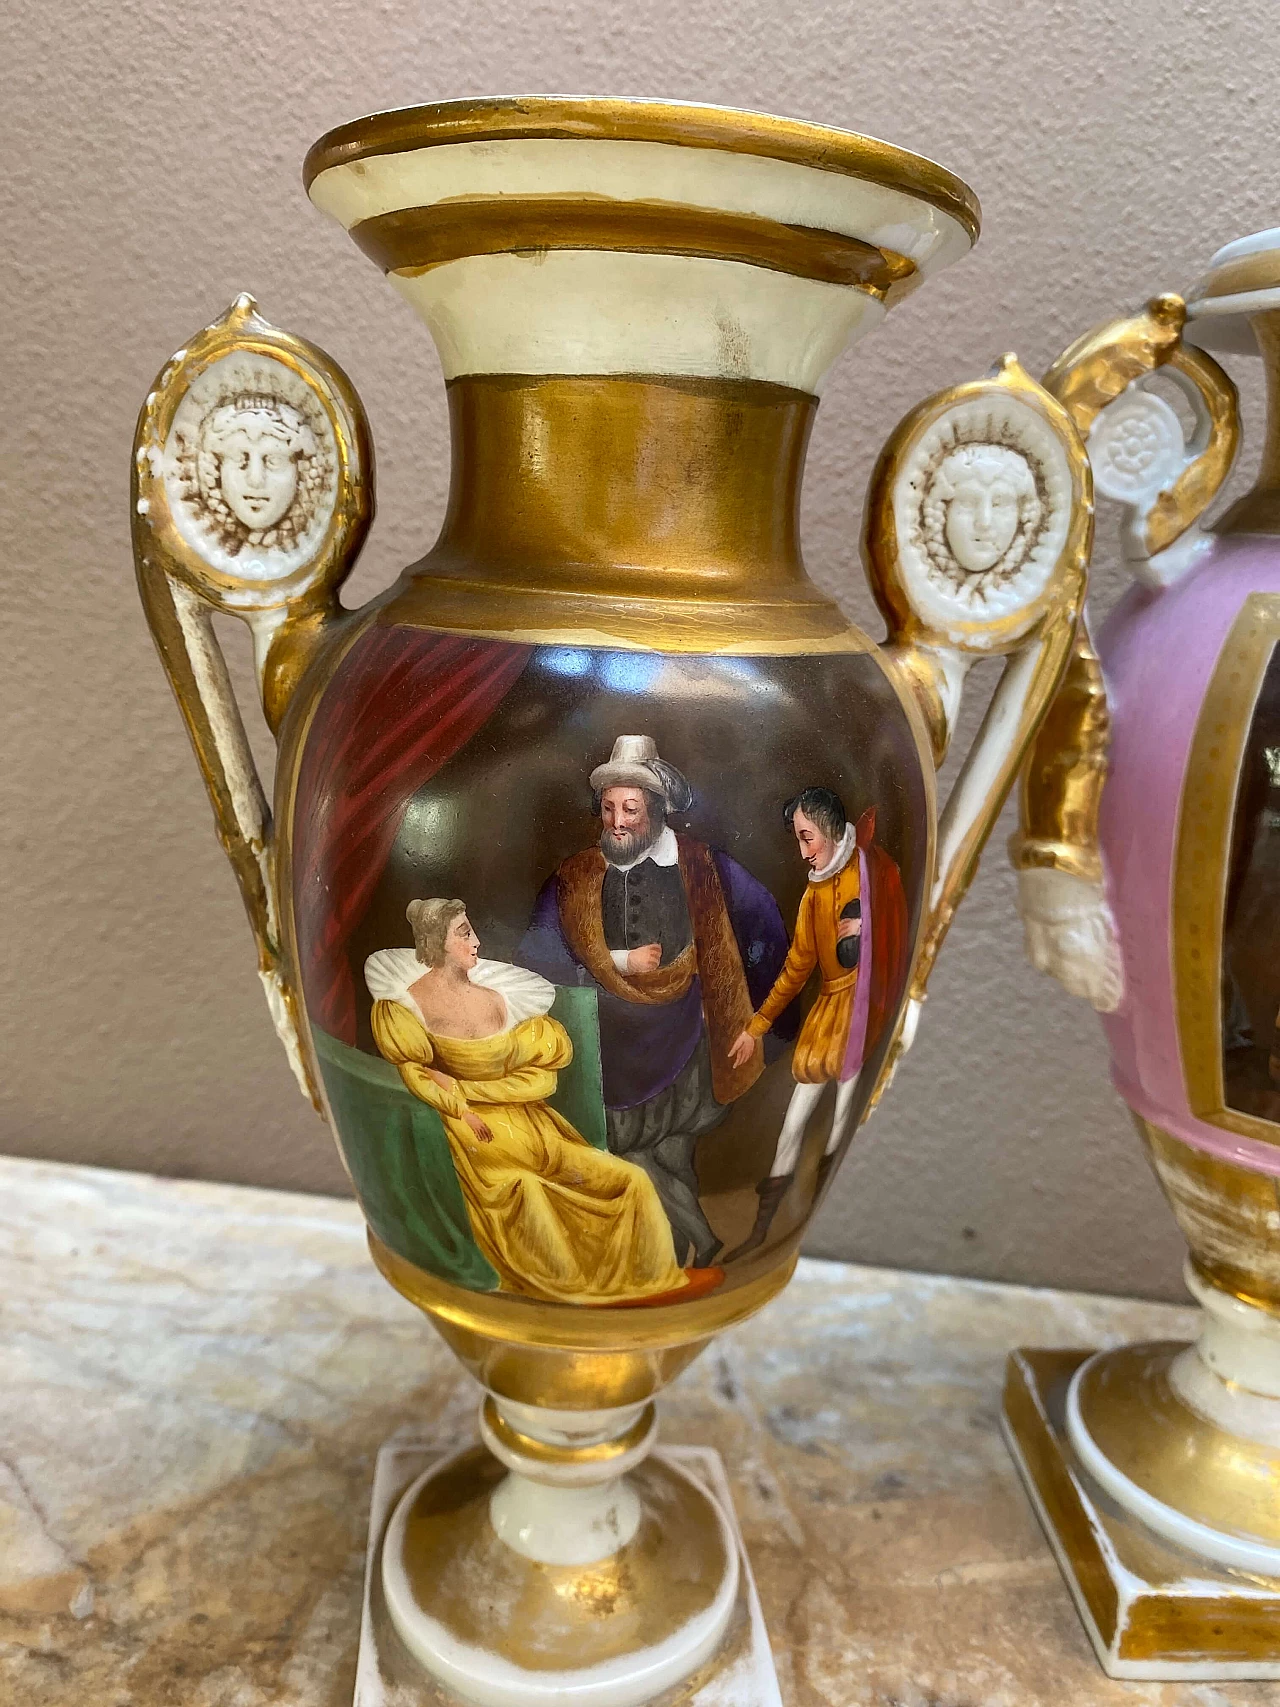 Pair of Neapolitan vases, 19th century 1253707